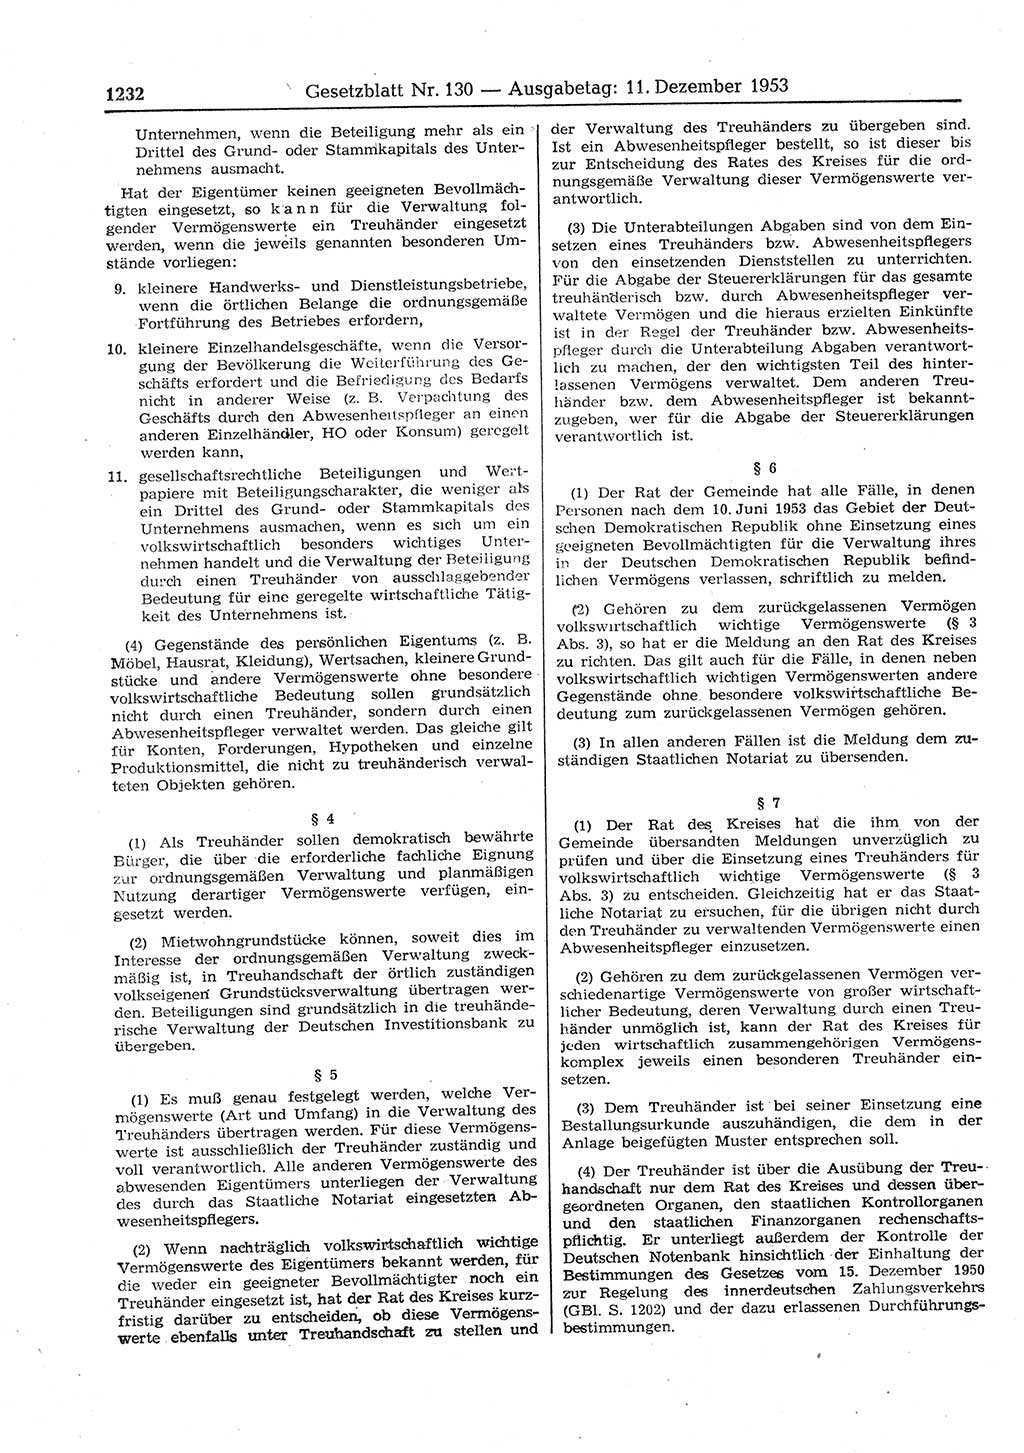 Gesetzblatt (GBl.) der Deutschen Demokratischen Republik (DDR) 1953, Seite 1232 (GBl. DDR 1953, S. 1232)